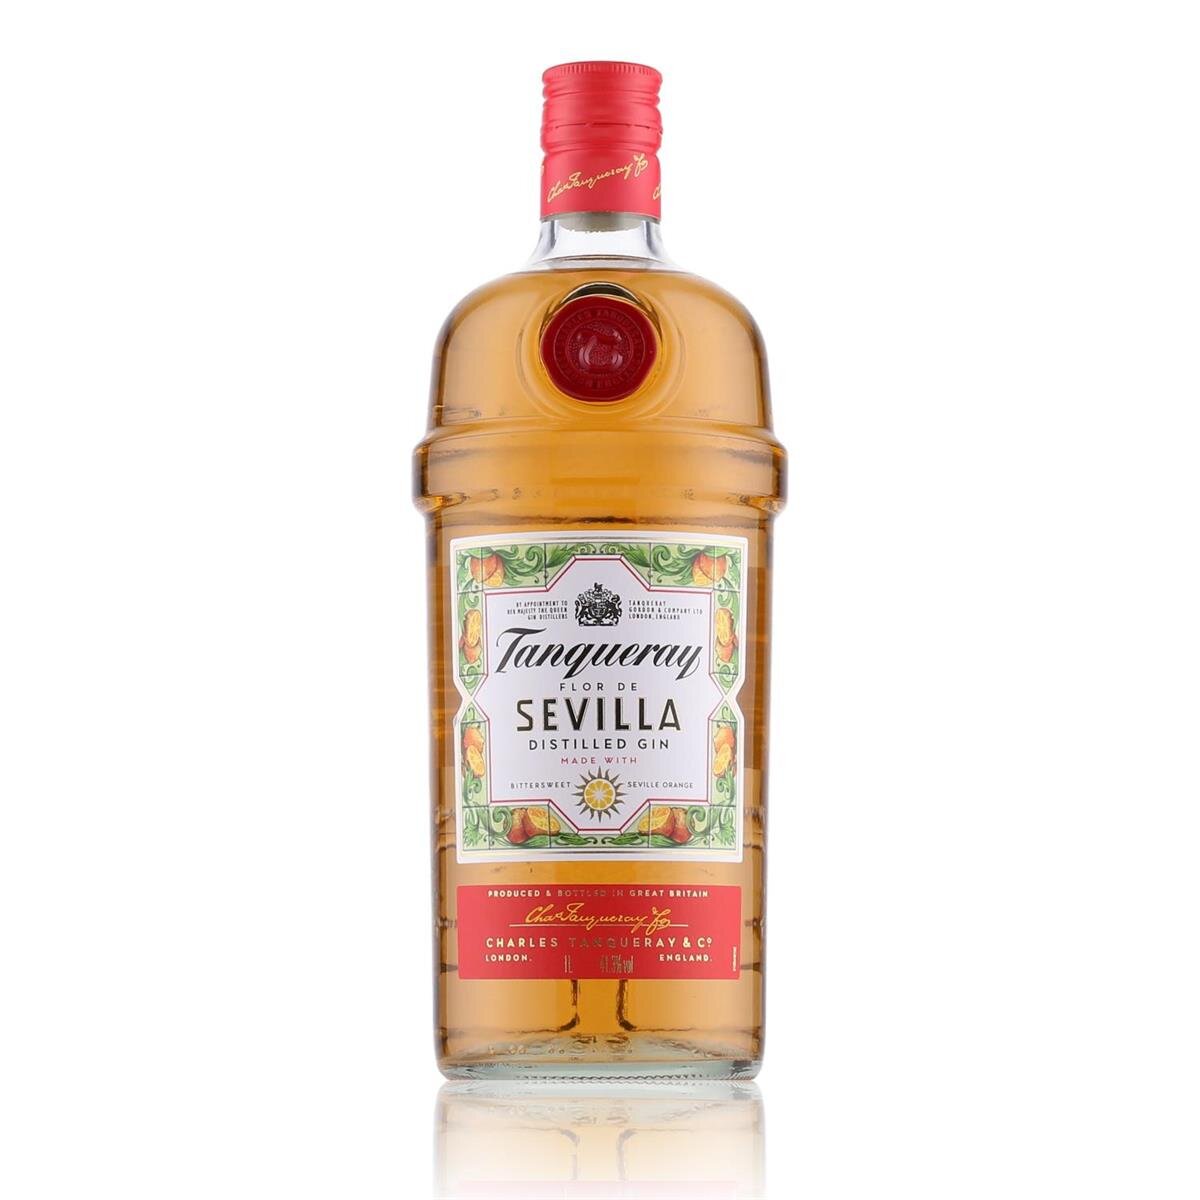 Sevilla Vol. 24,19 Gin Flor 41,3% Tanqueray de 1l, Distilled €